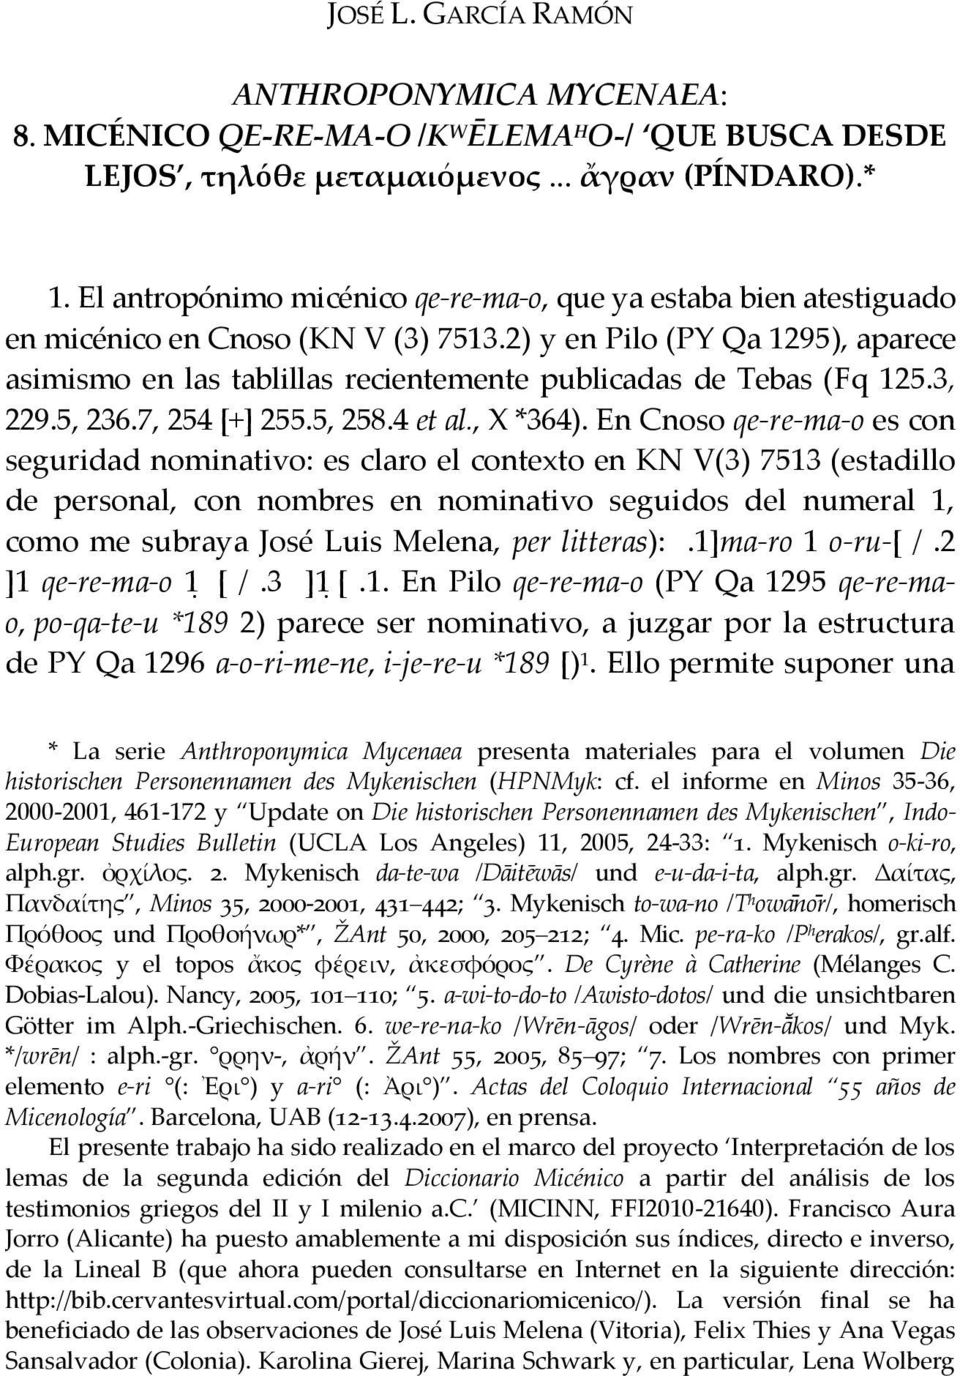 2) y en Pilo (PY Qa 1295), aparece asimismo en las tablillas recientemente publicadas de Tebas (Fq 125.3, 229.5, 236.7, 254 [+] 255.5, 258.4 et al., X *364).